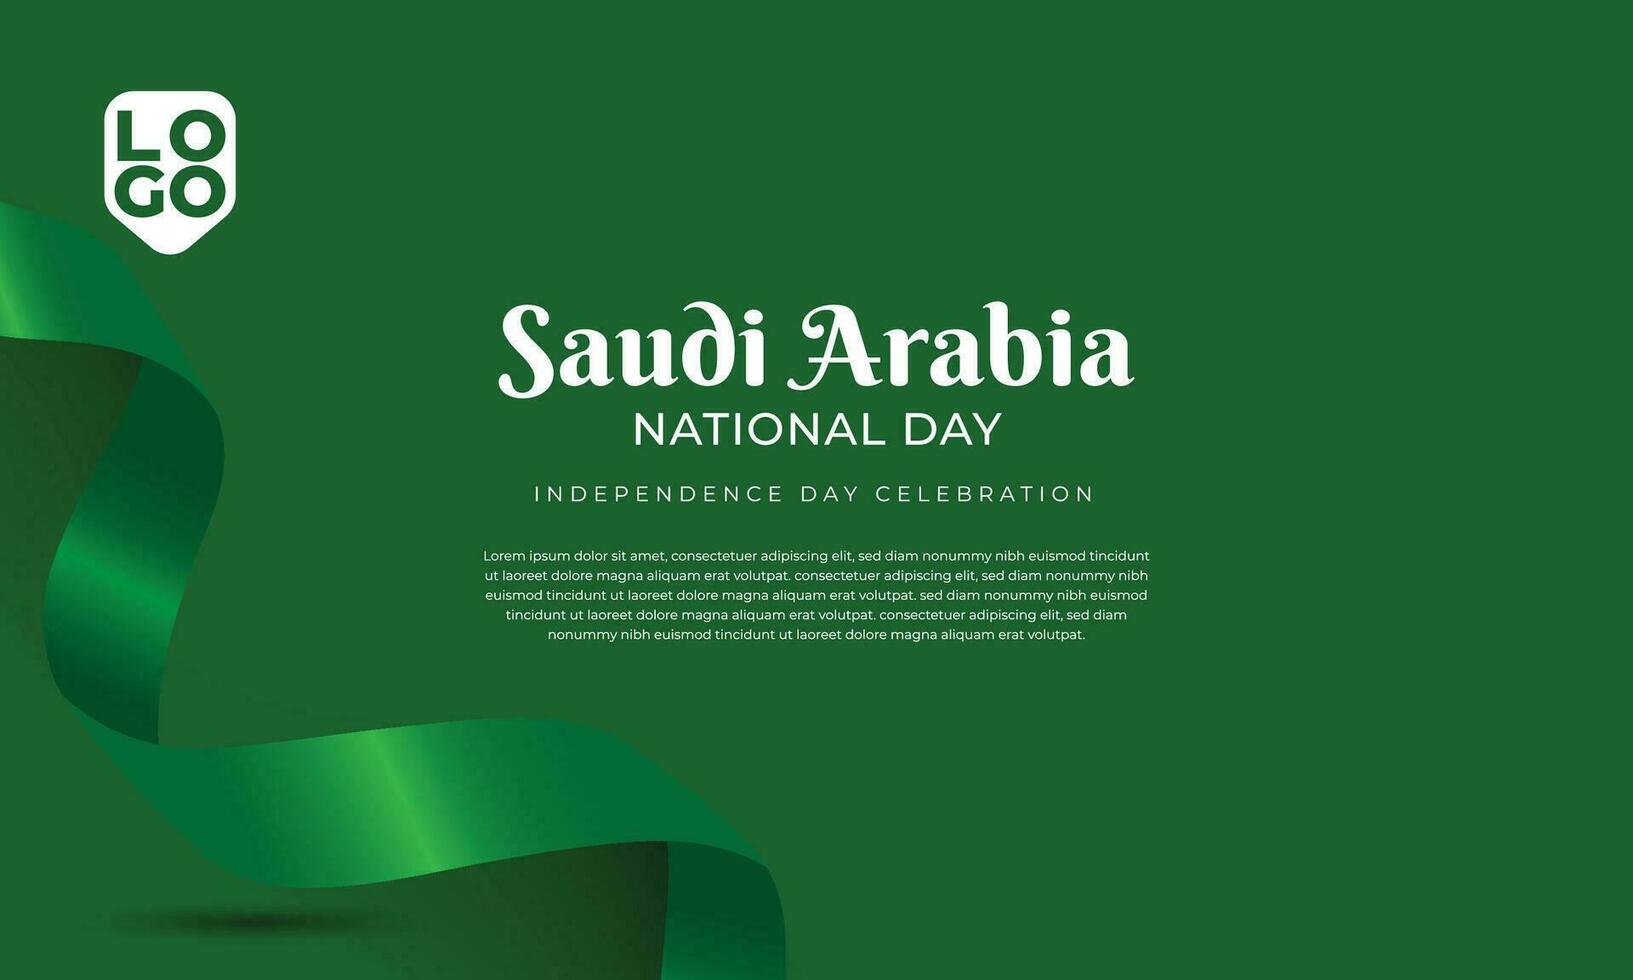 koninkrijk van saudi Arabië nationaal dag vector